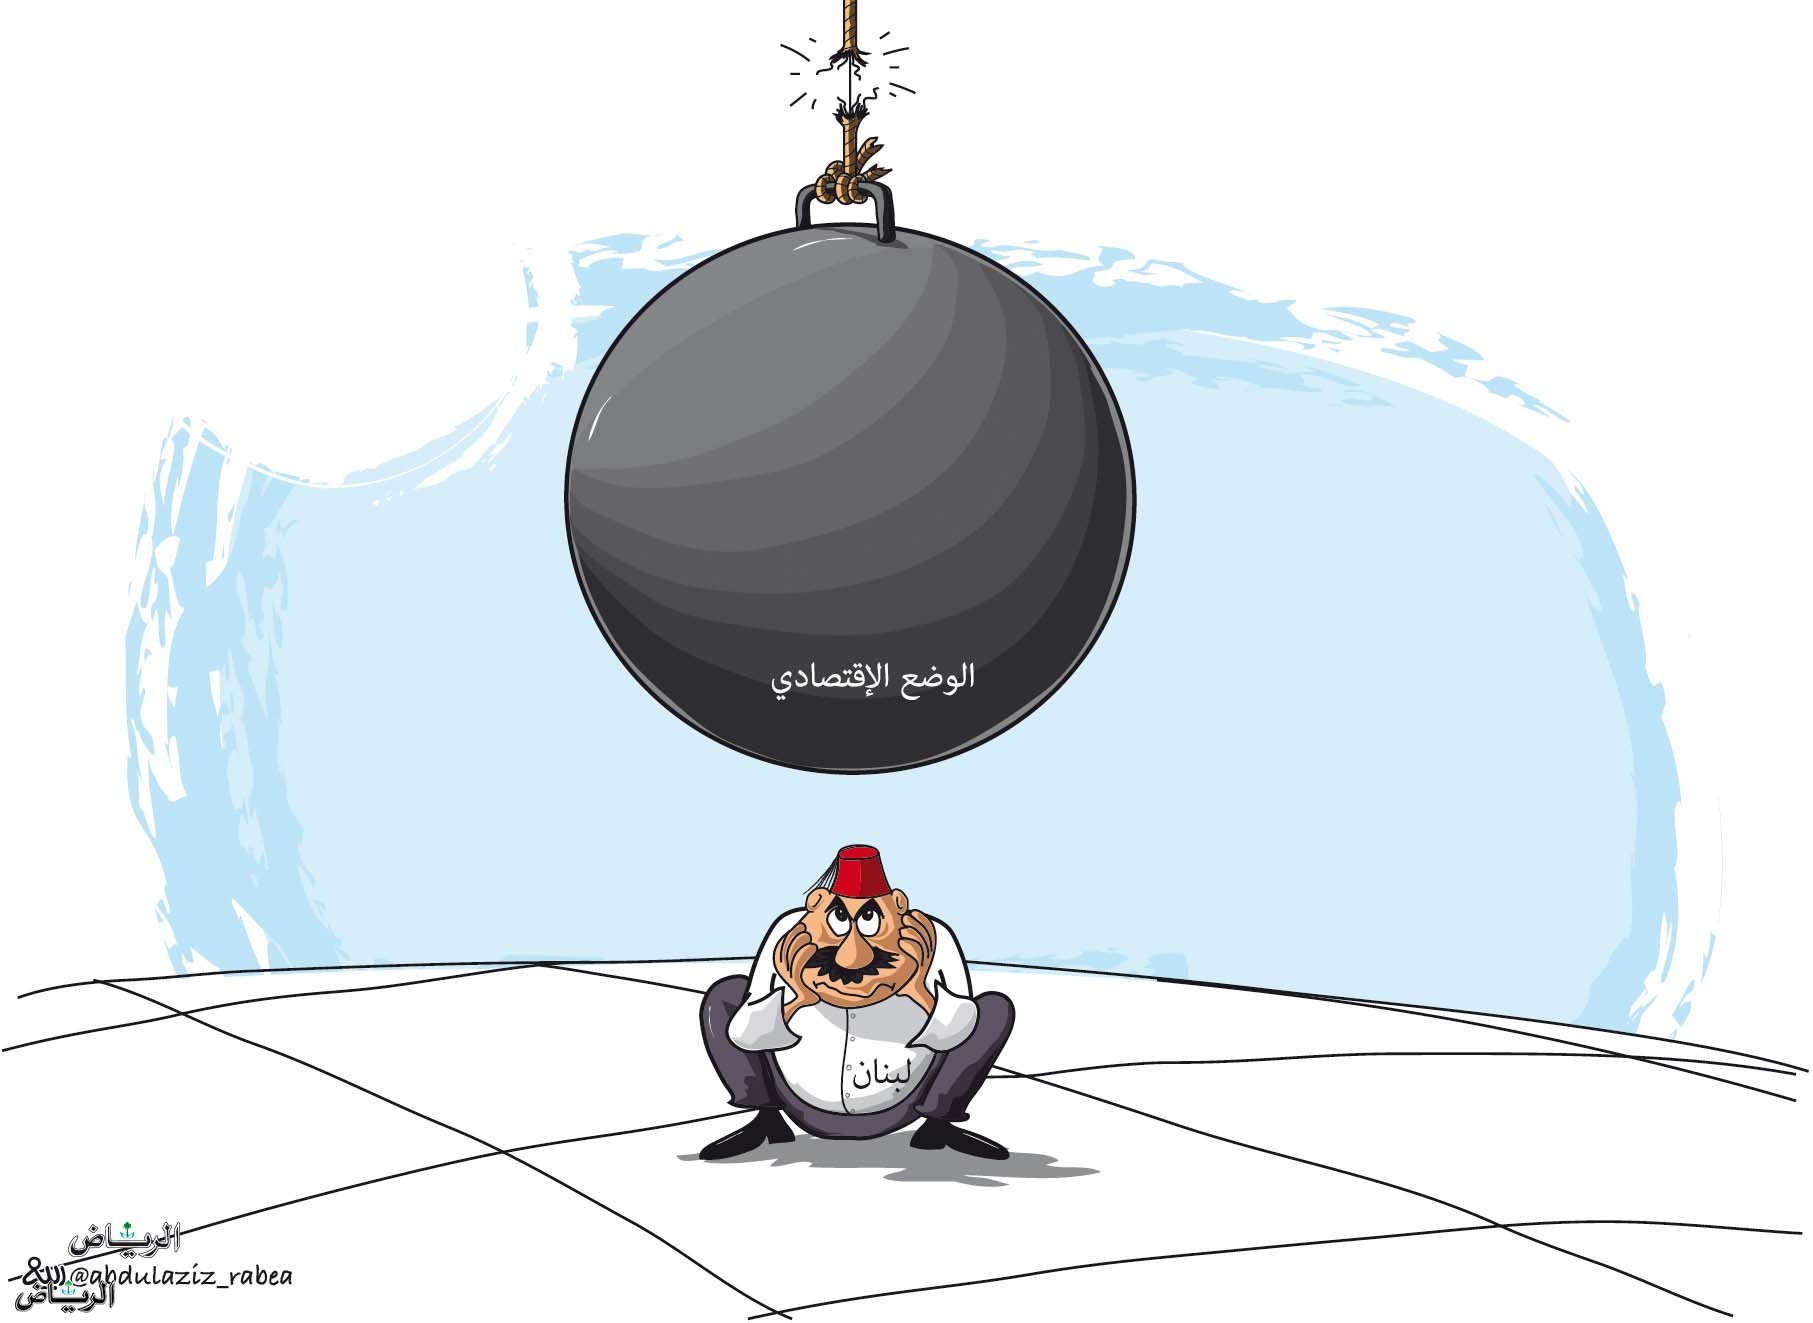 קריקטורה של העיתון הסעודי, ריאד